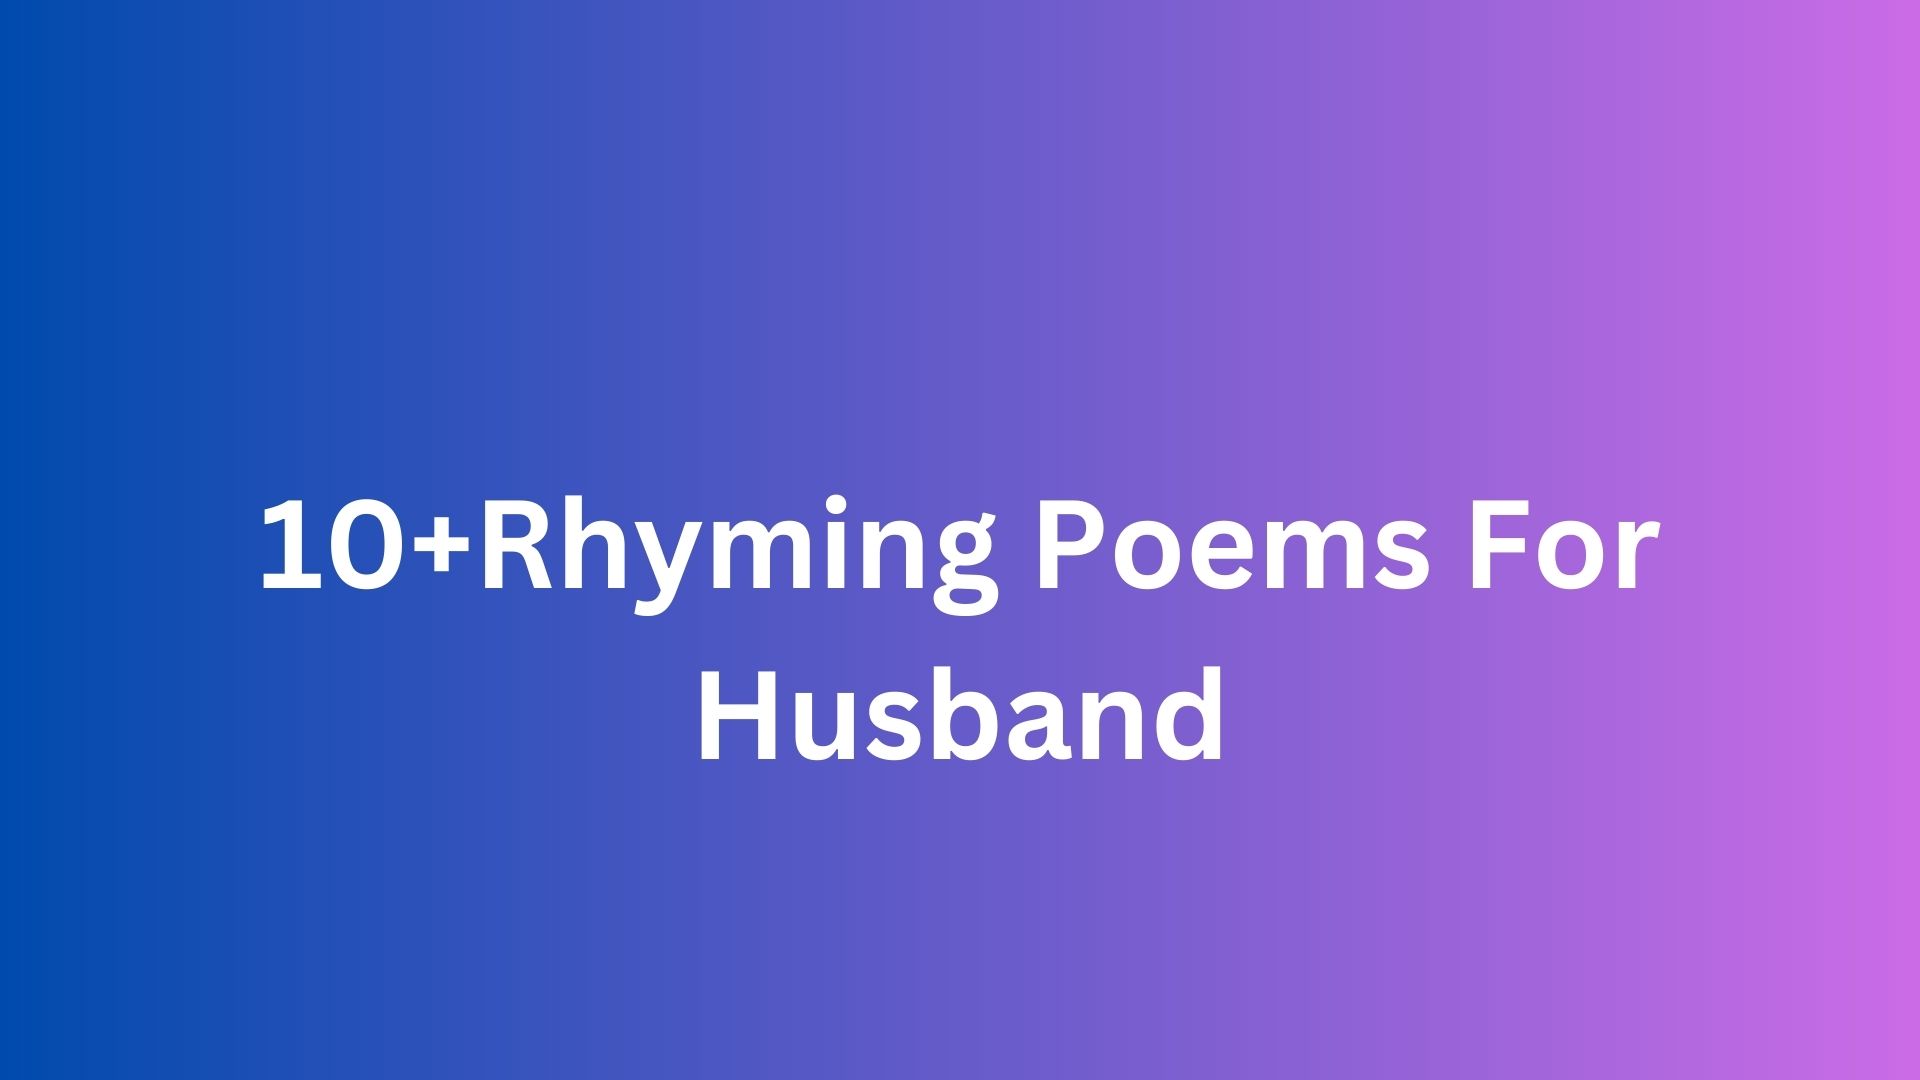 10+Rhyming Poems For Husband - Poem Source